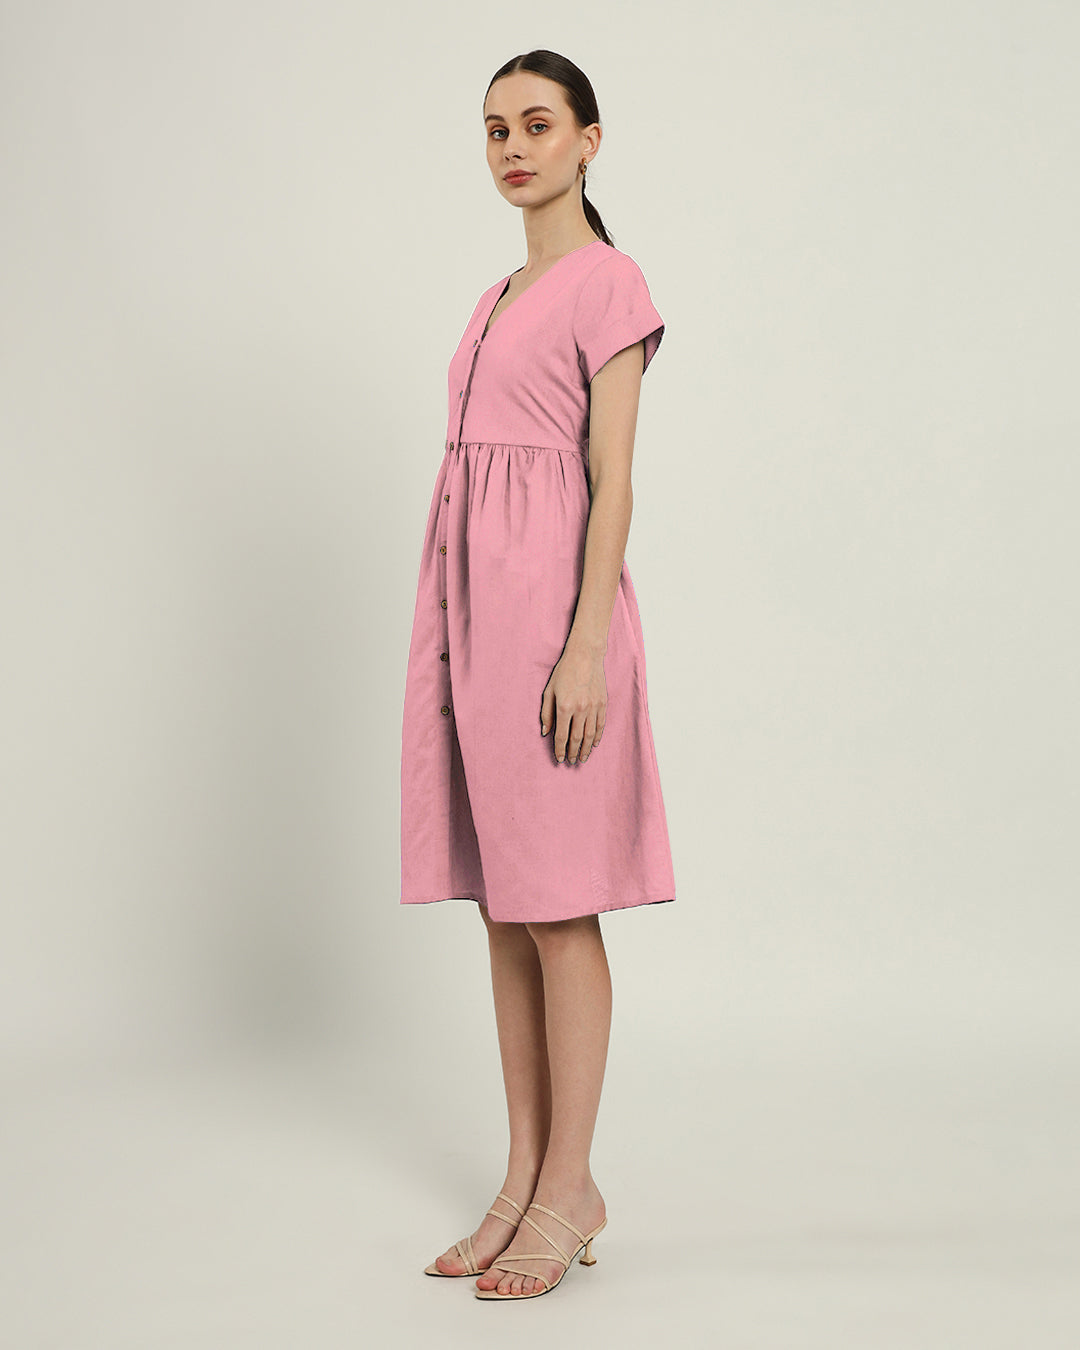 The Valence Fondant Pink Dress